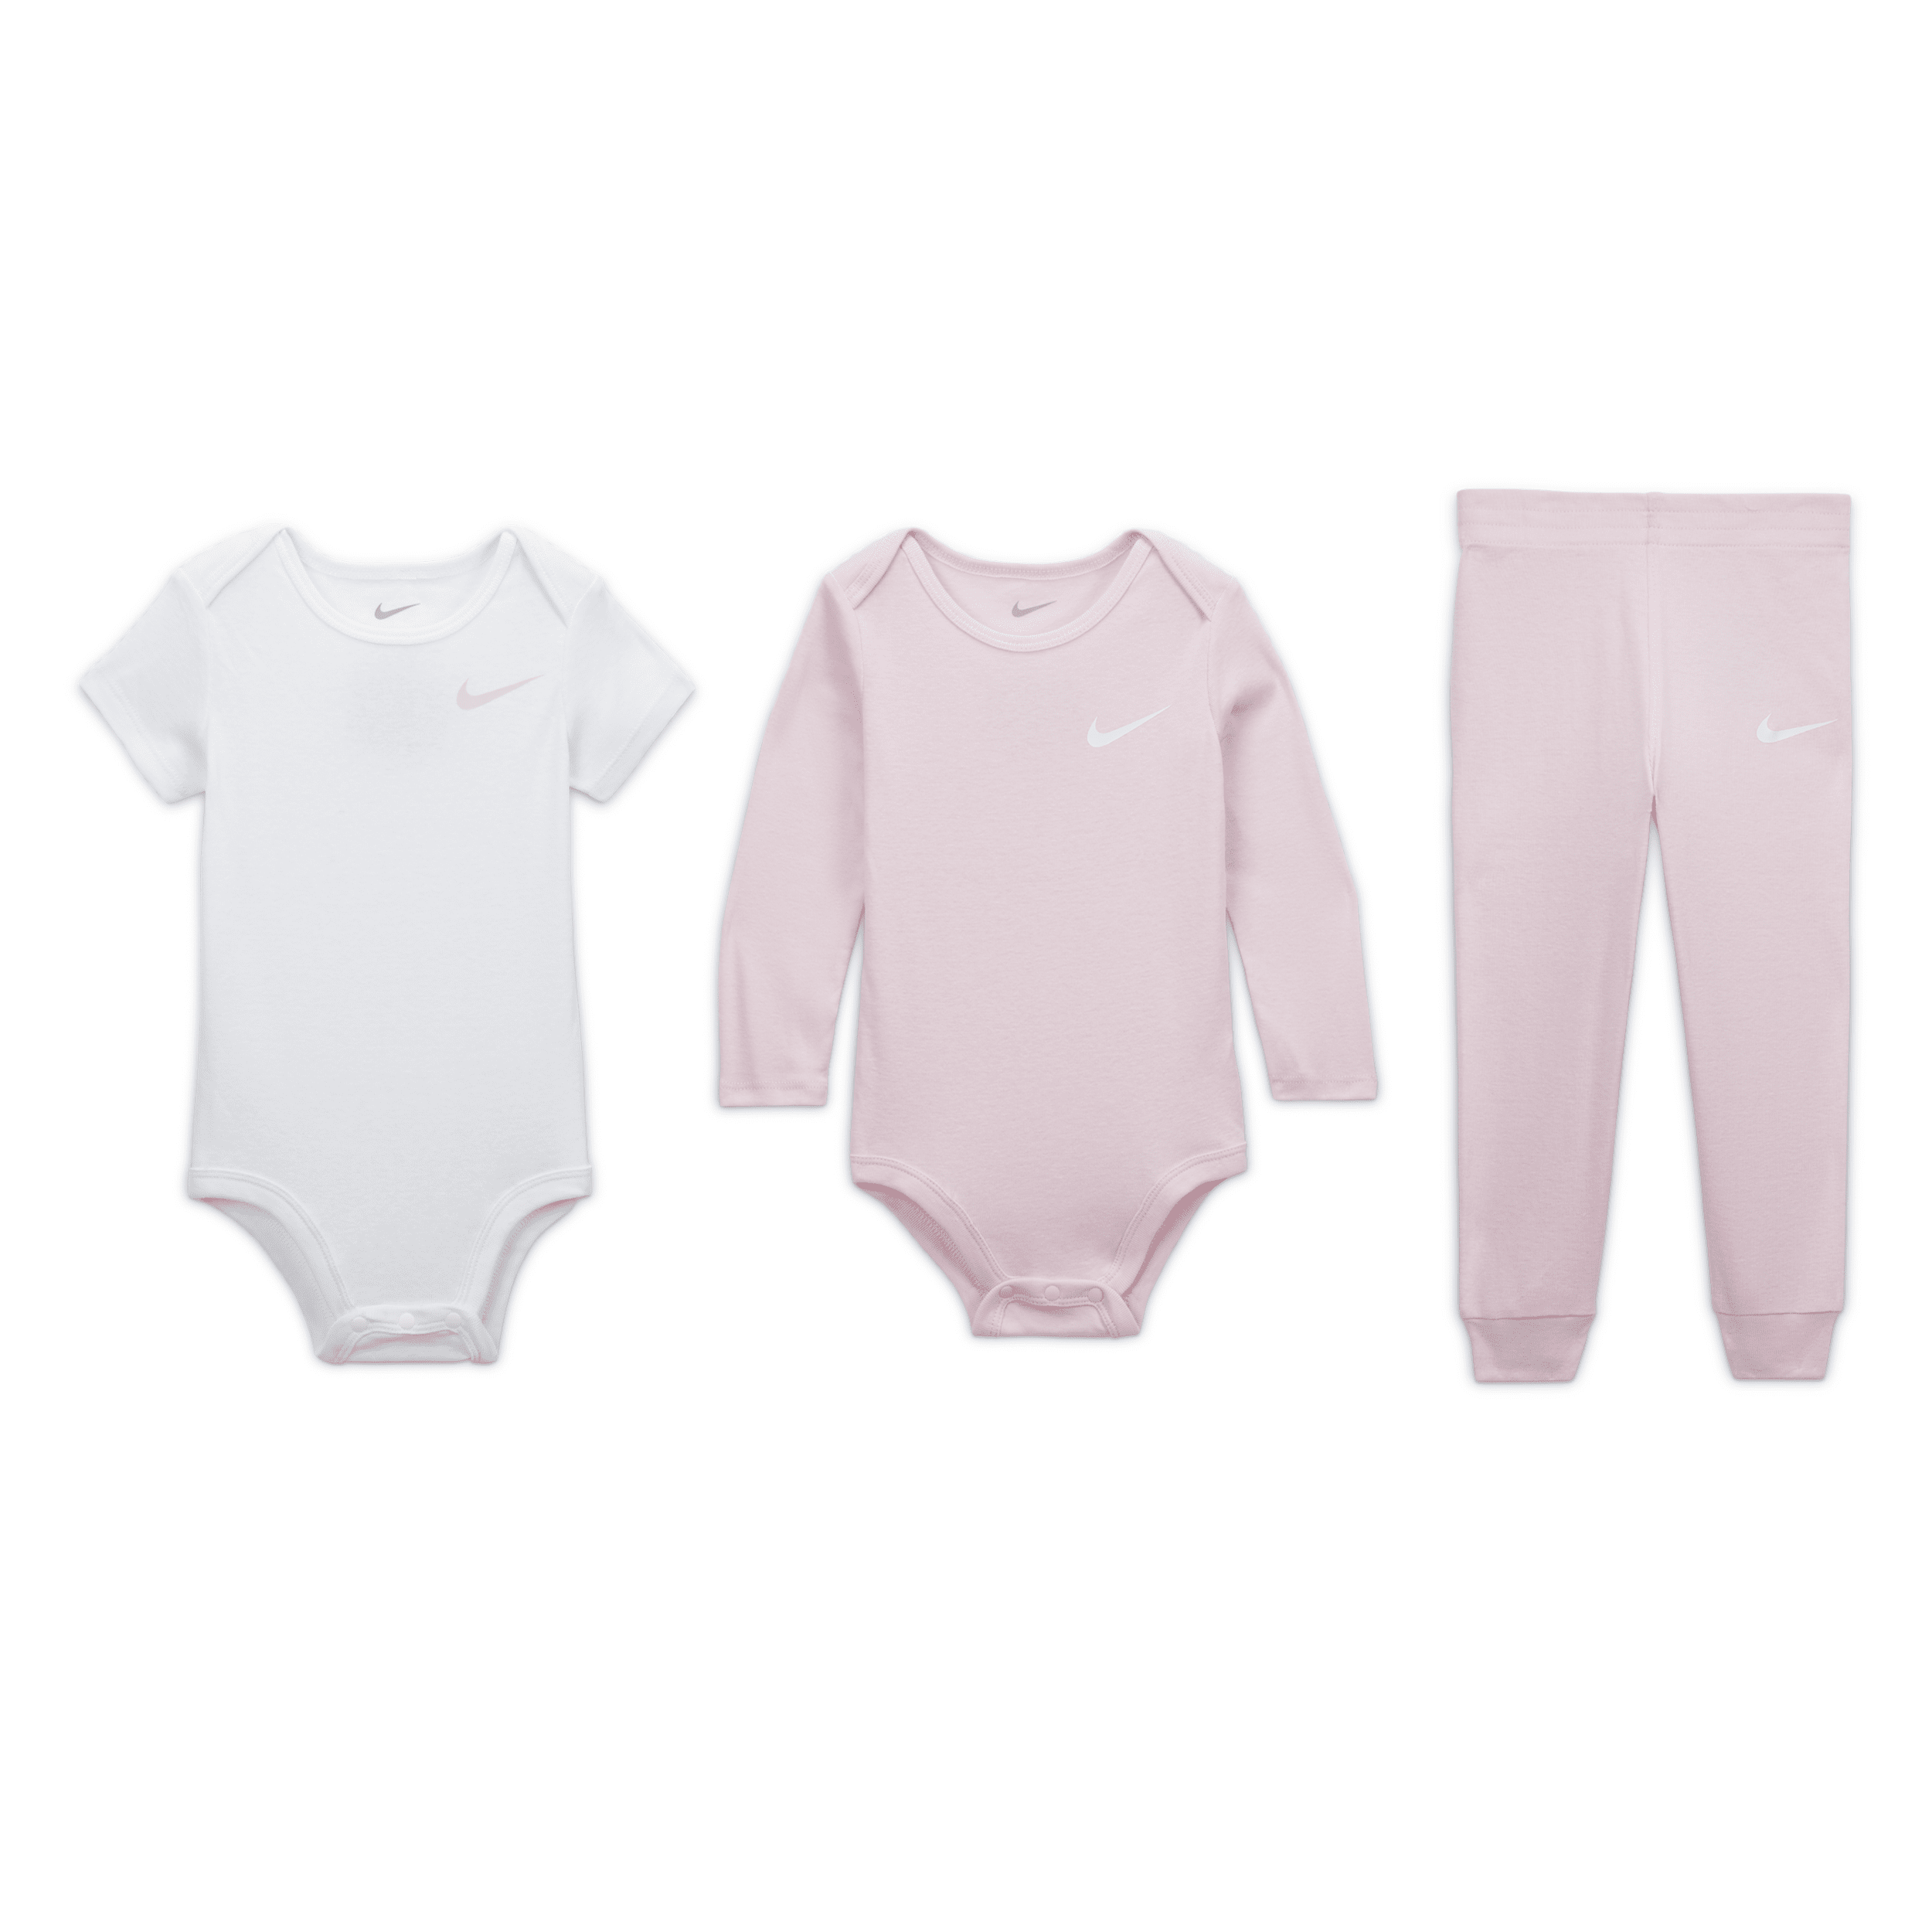 Nike Essentials Baby (12-24m) 3-piece Bodysuit Set In Pink